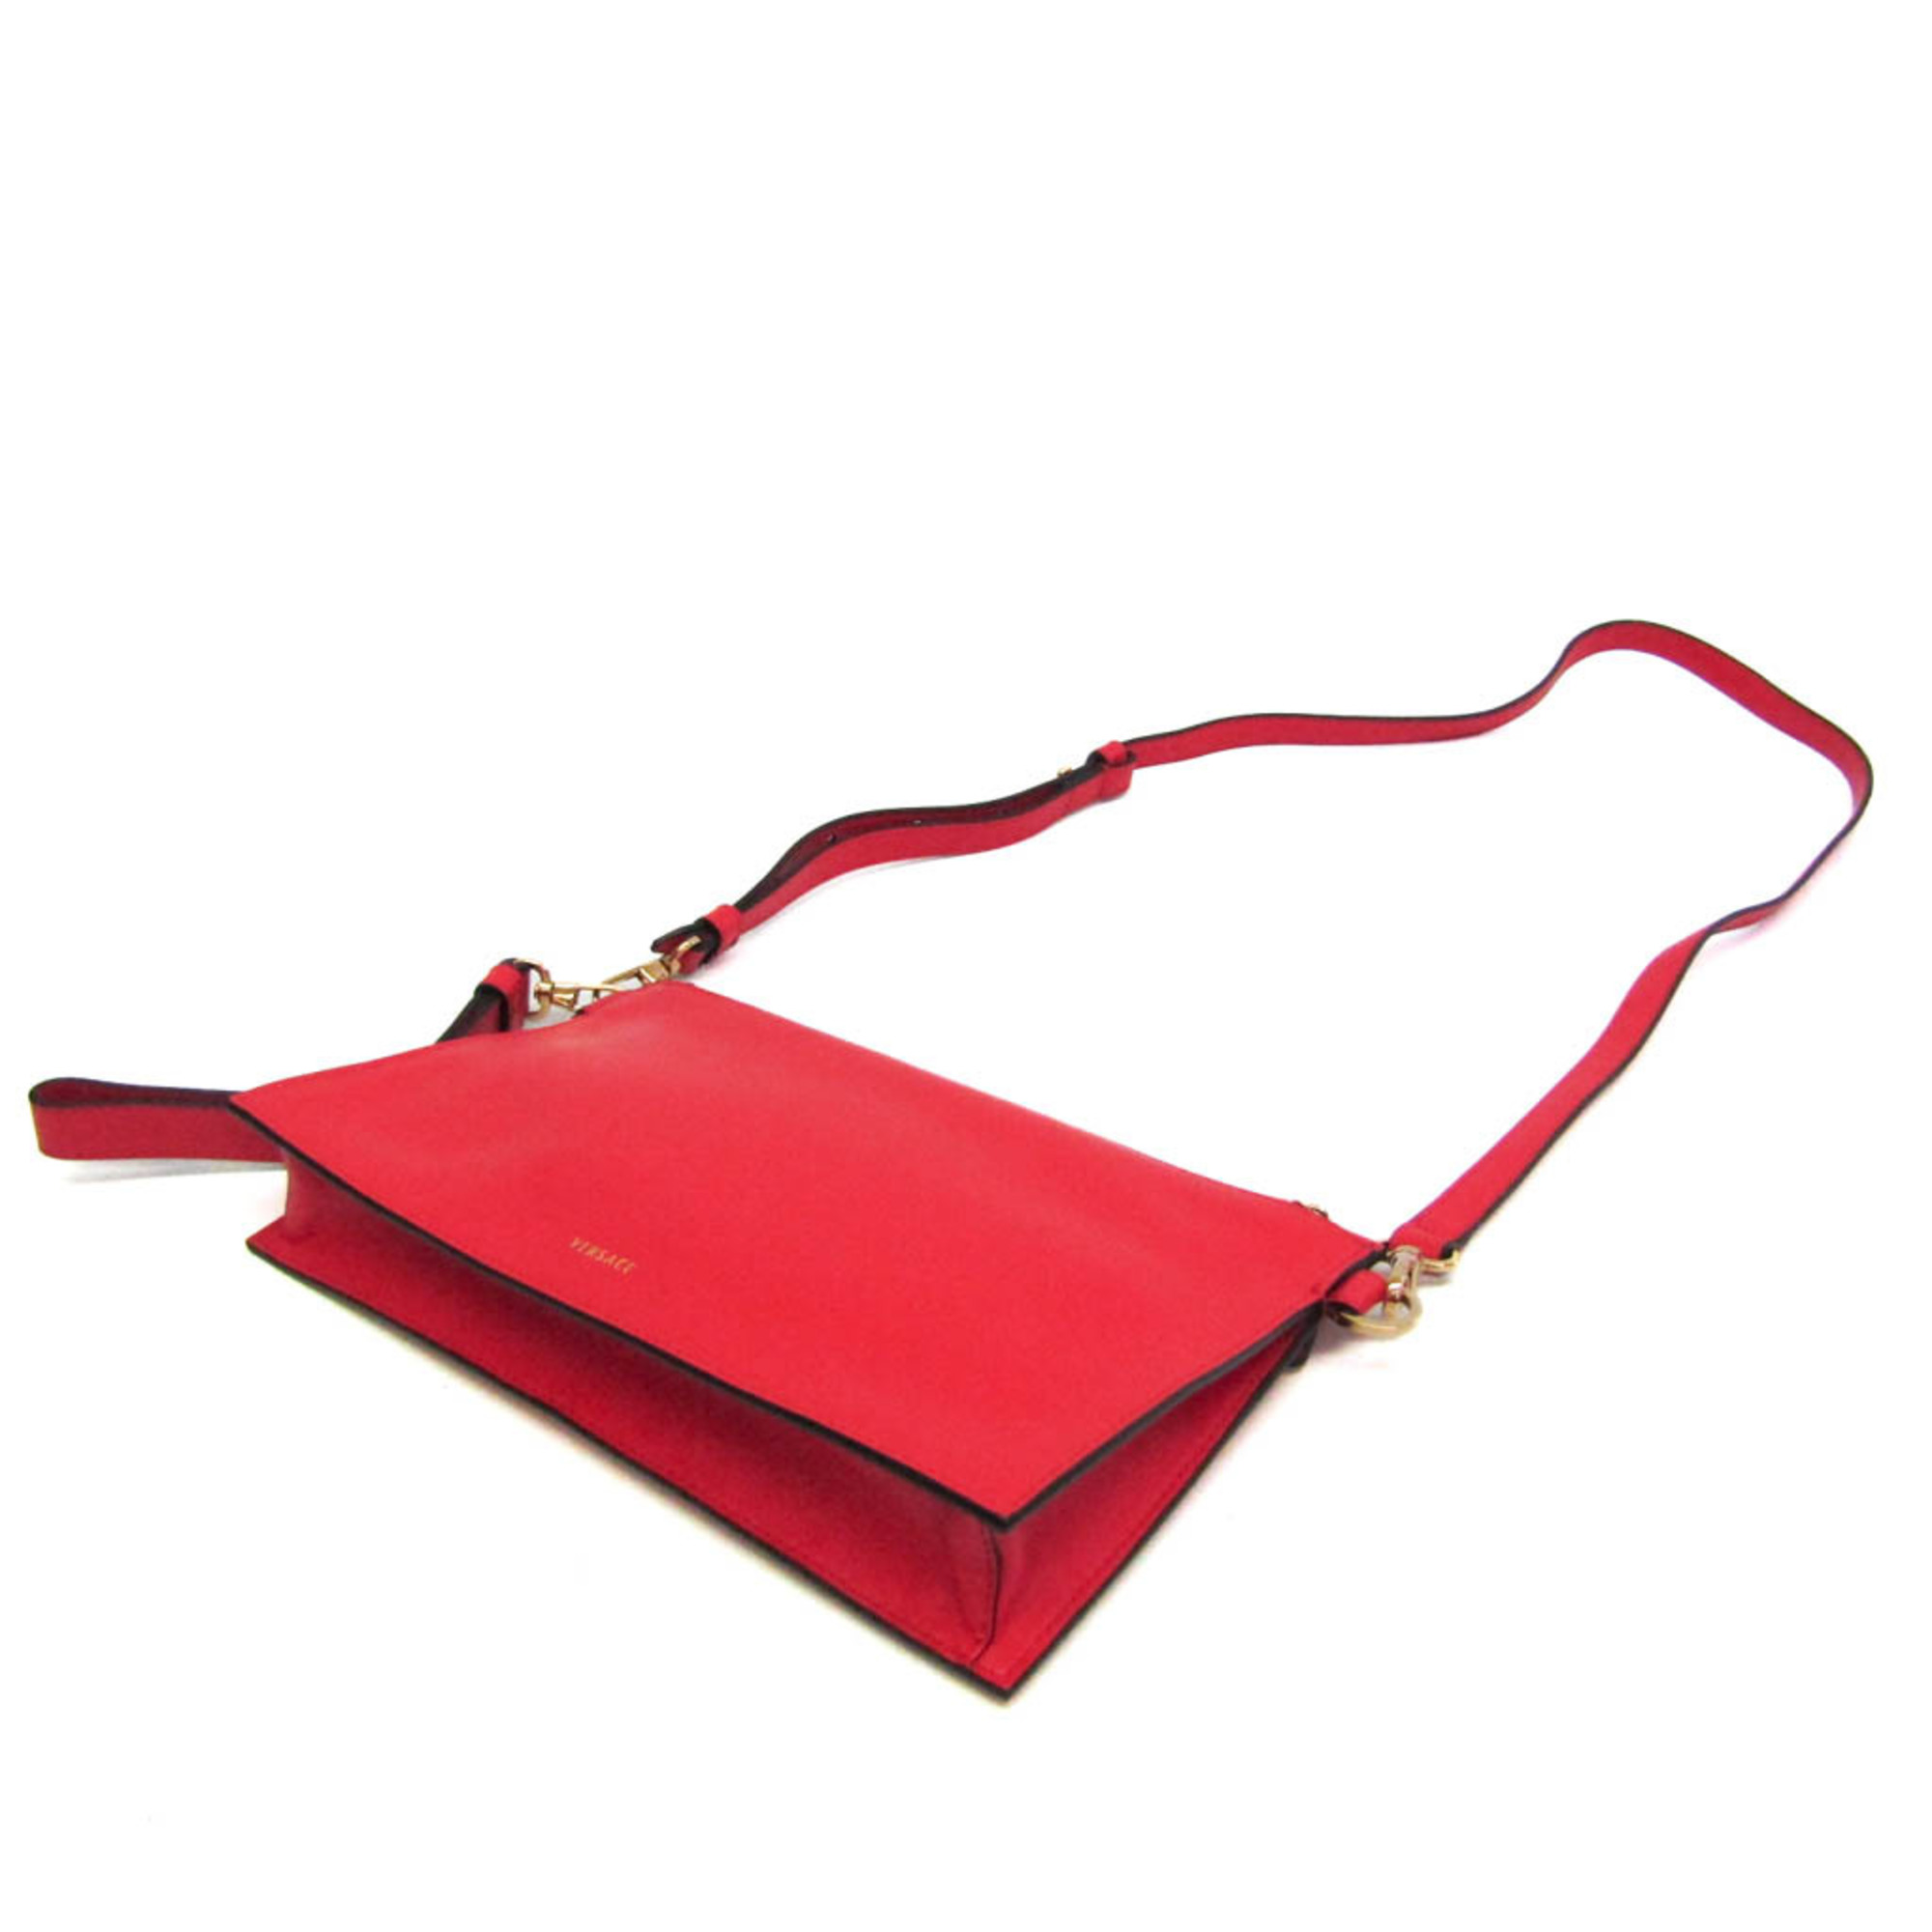 Versace Virtus Women's Leather Shoulder Bag Red Color